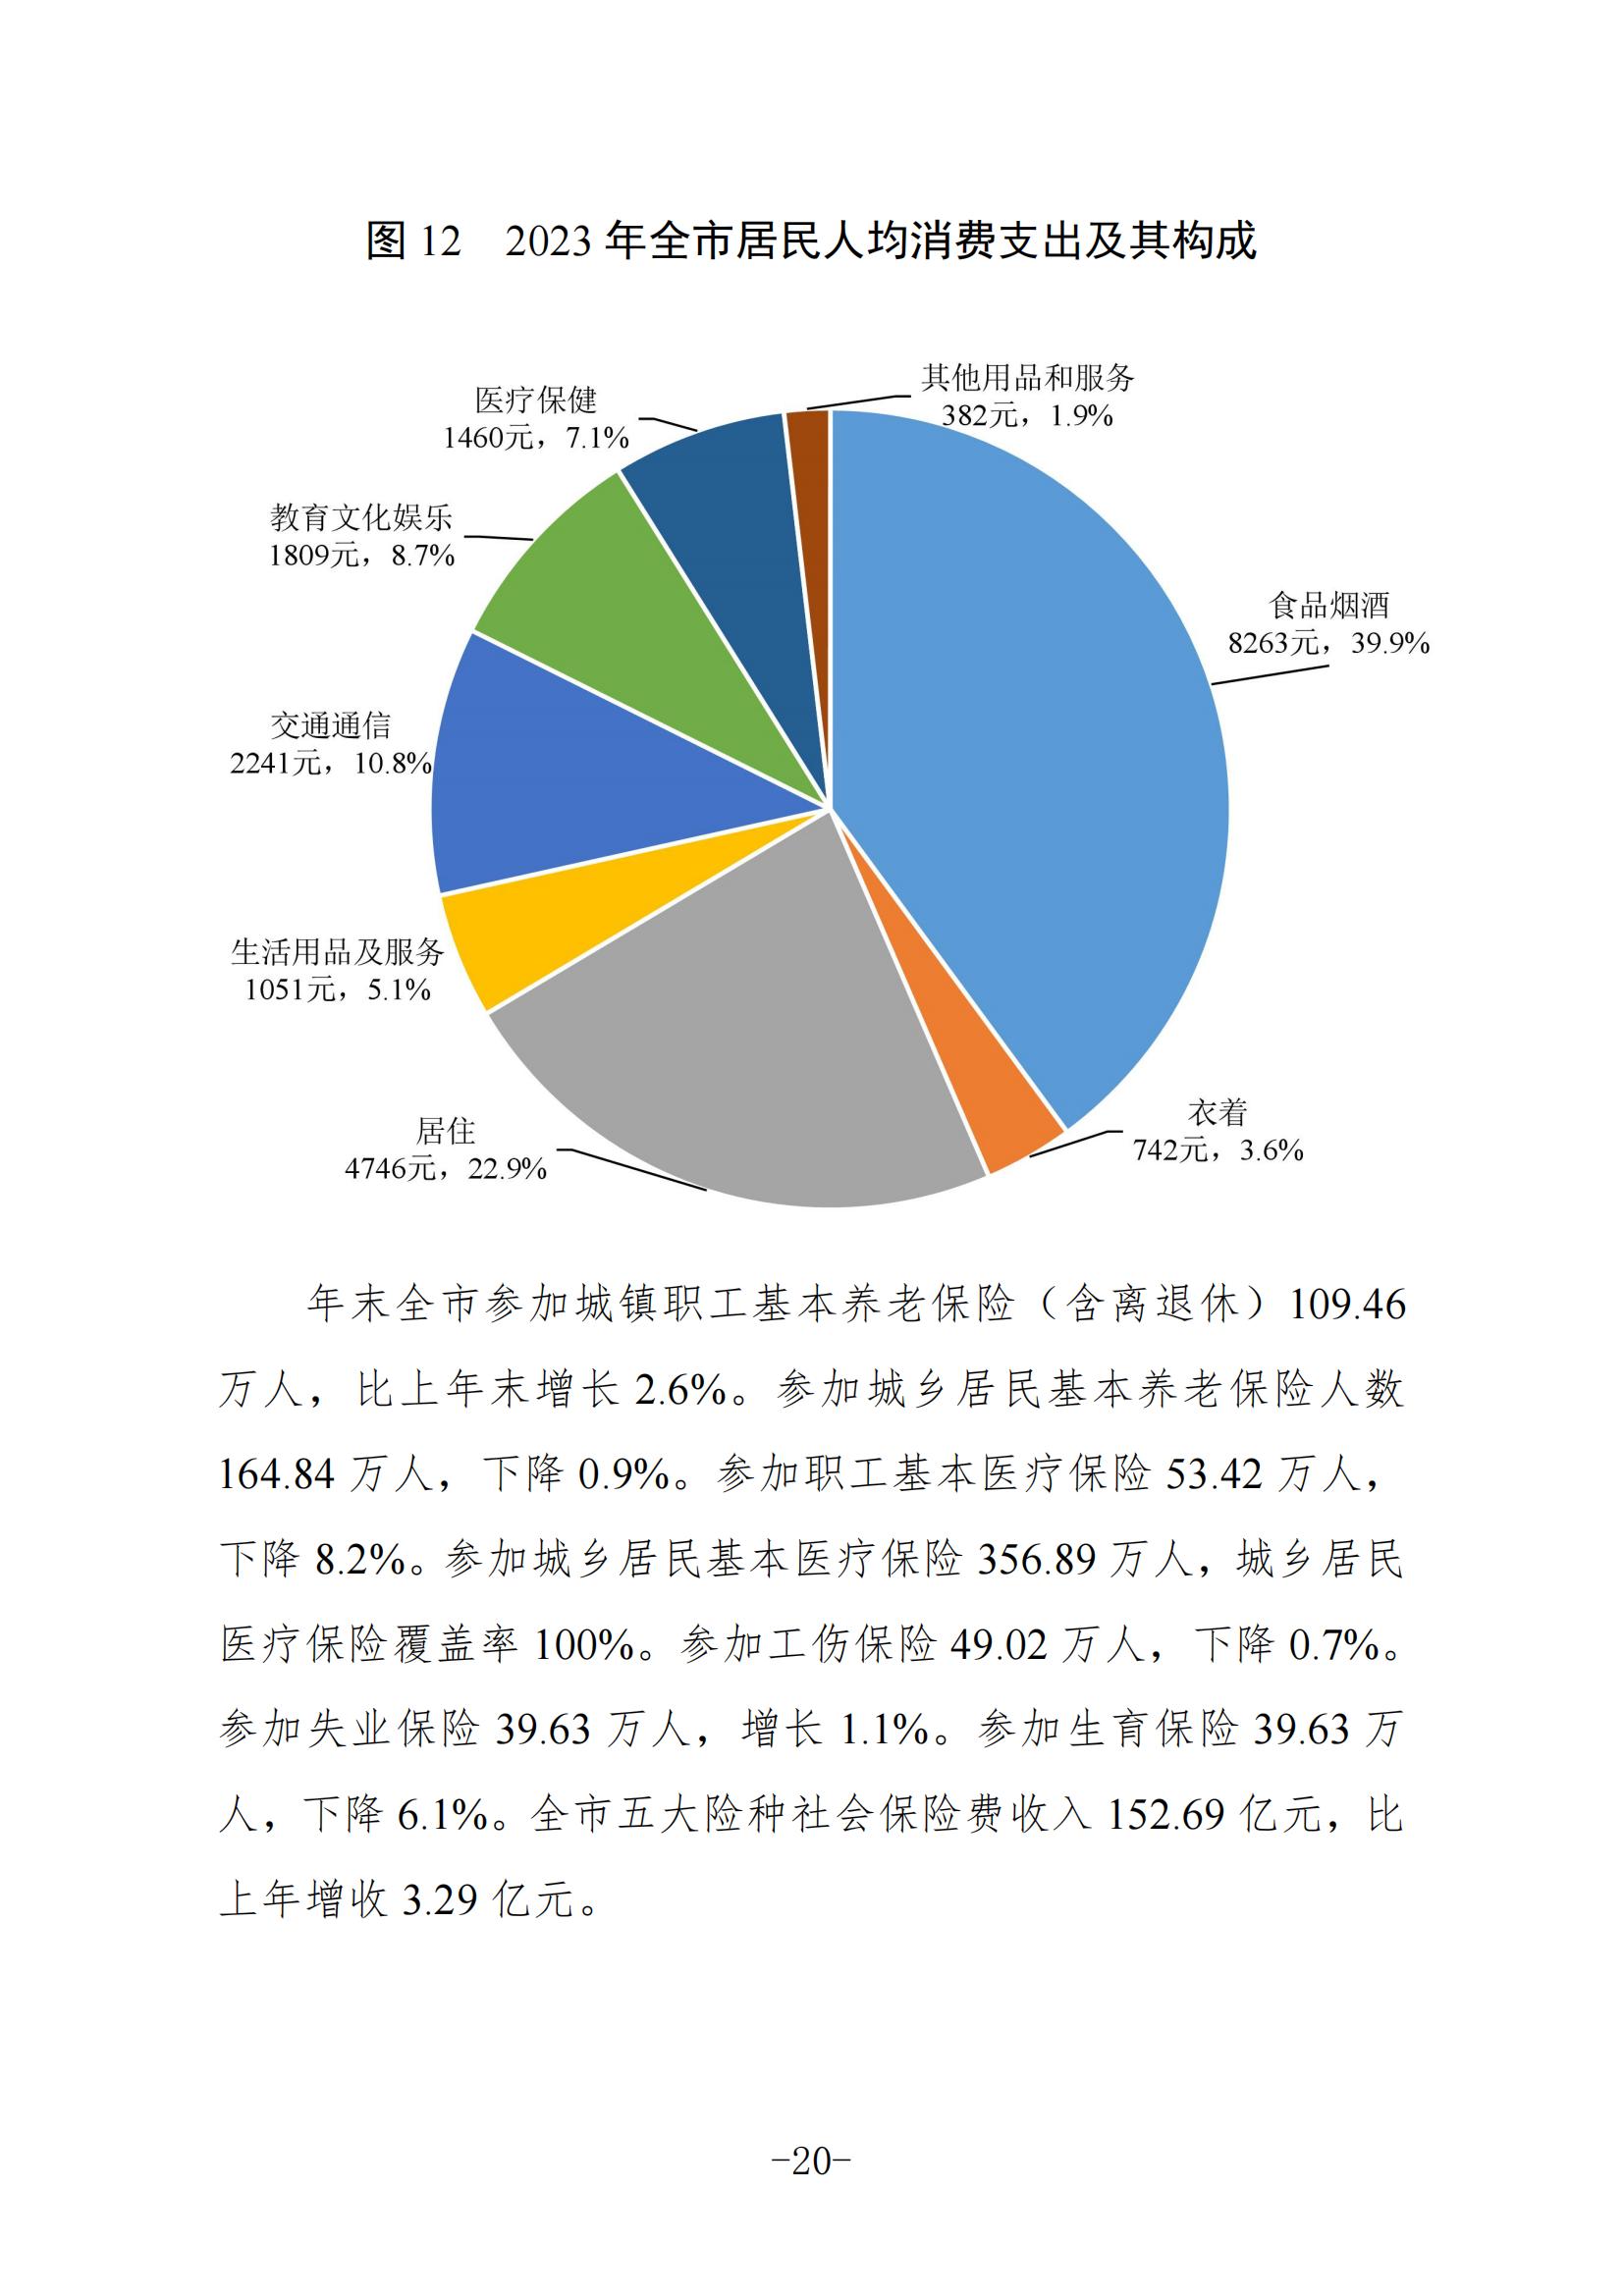 定稿-2023年梅州国民经济和社会发展统计公报-20240507_19.jpg